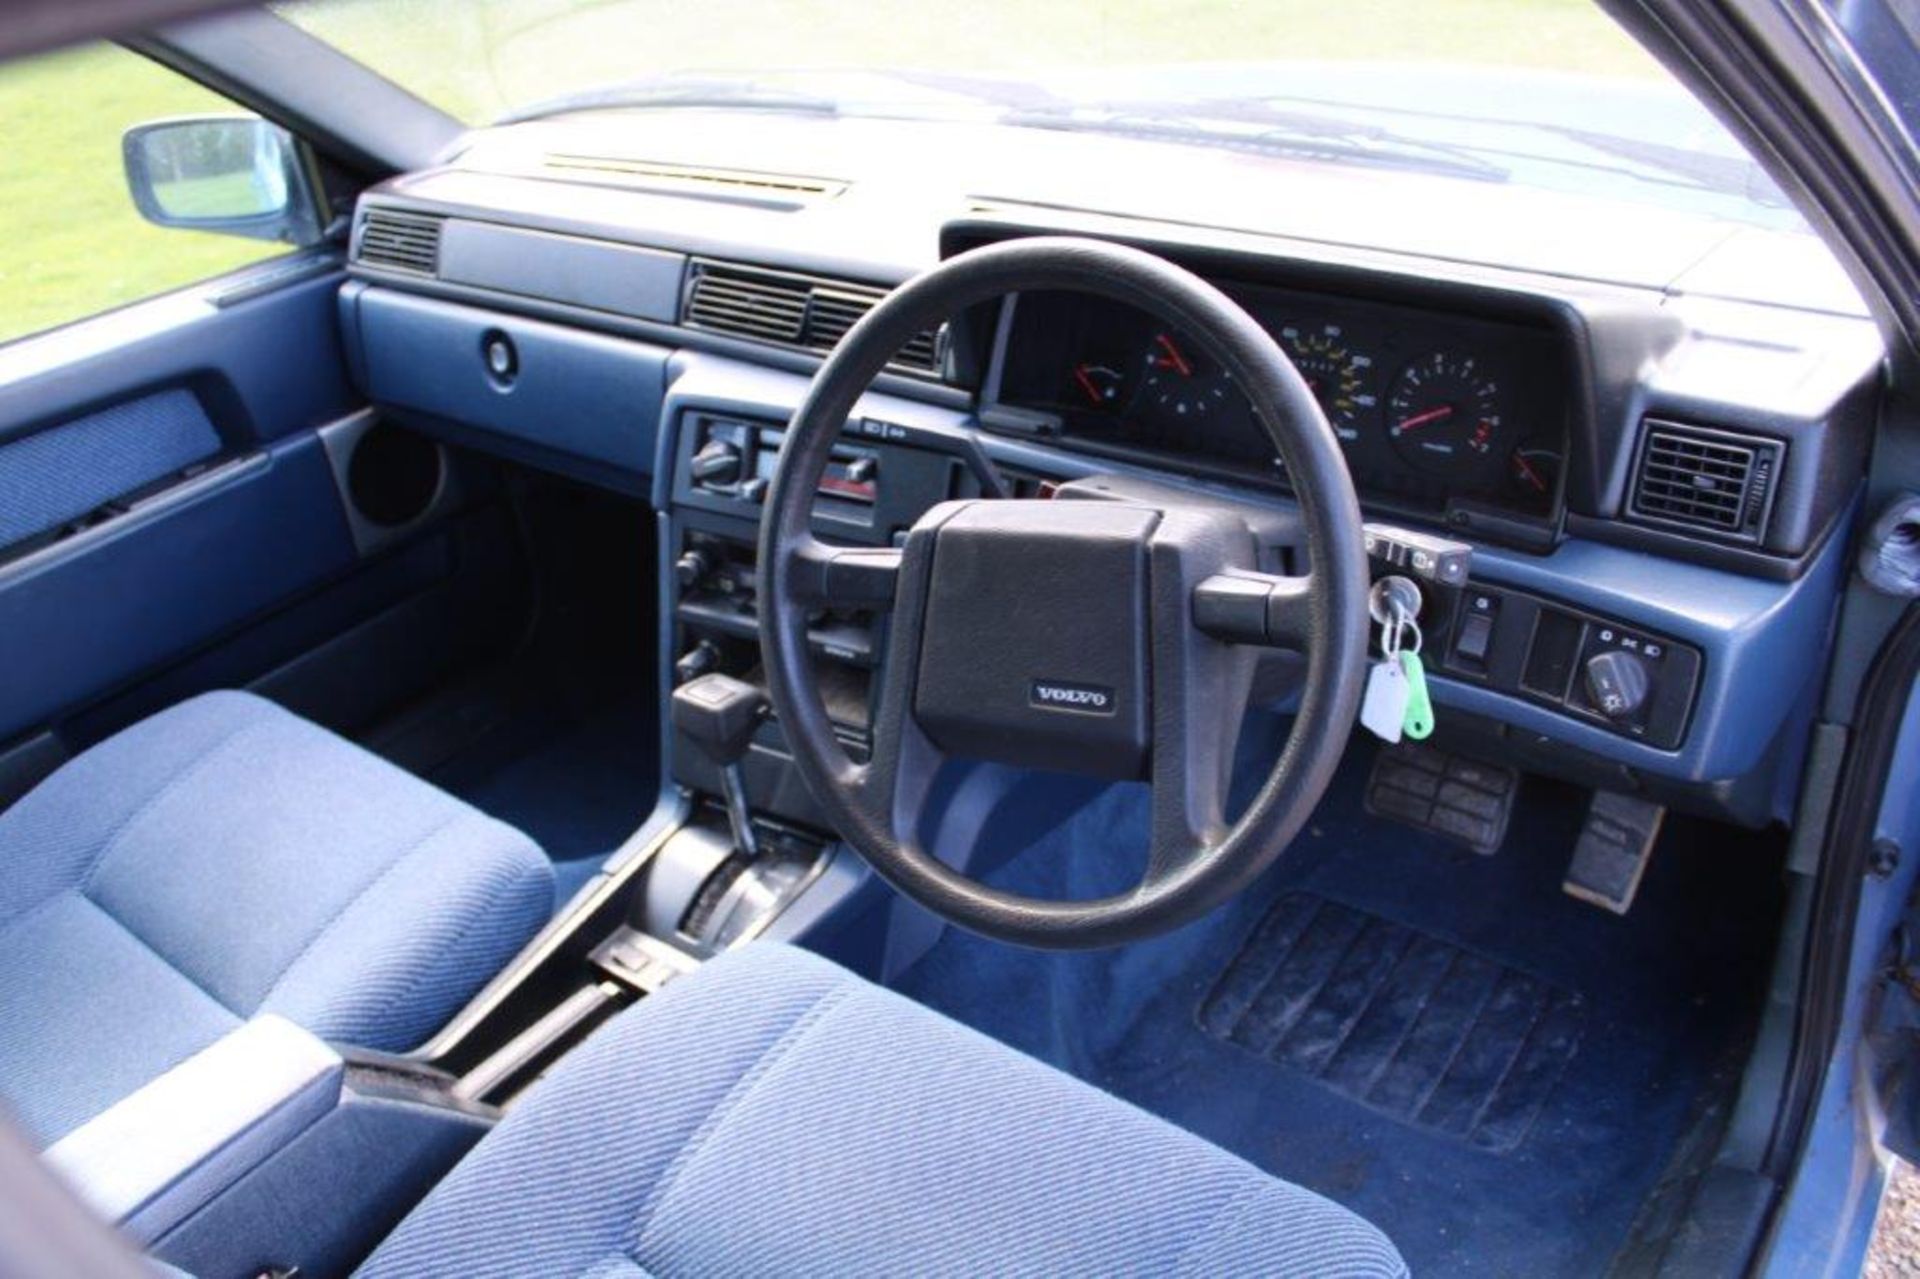 1986 Volvo 740 GL Auto Estate - Image 13 of 19